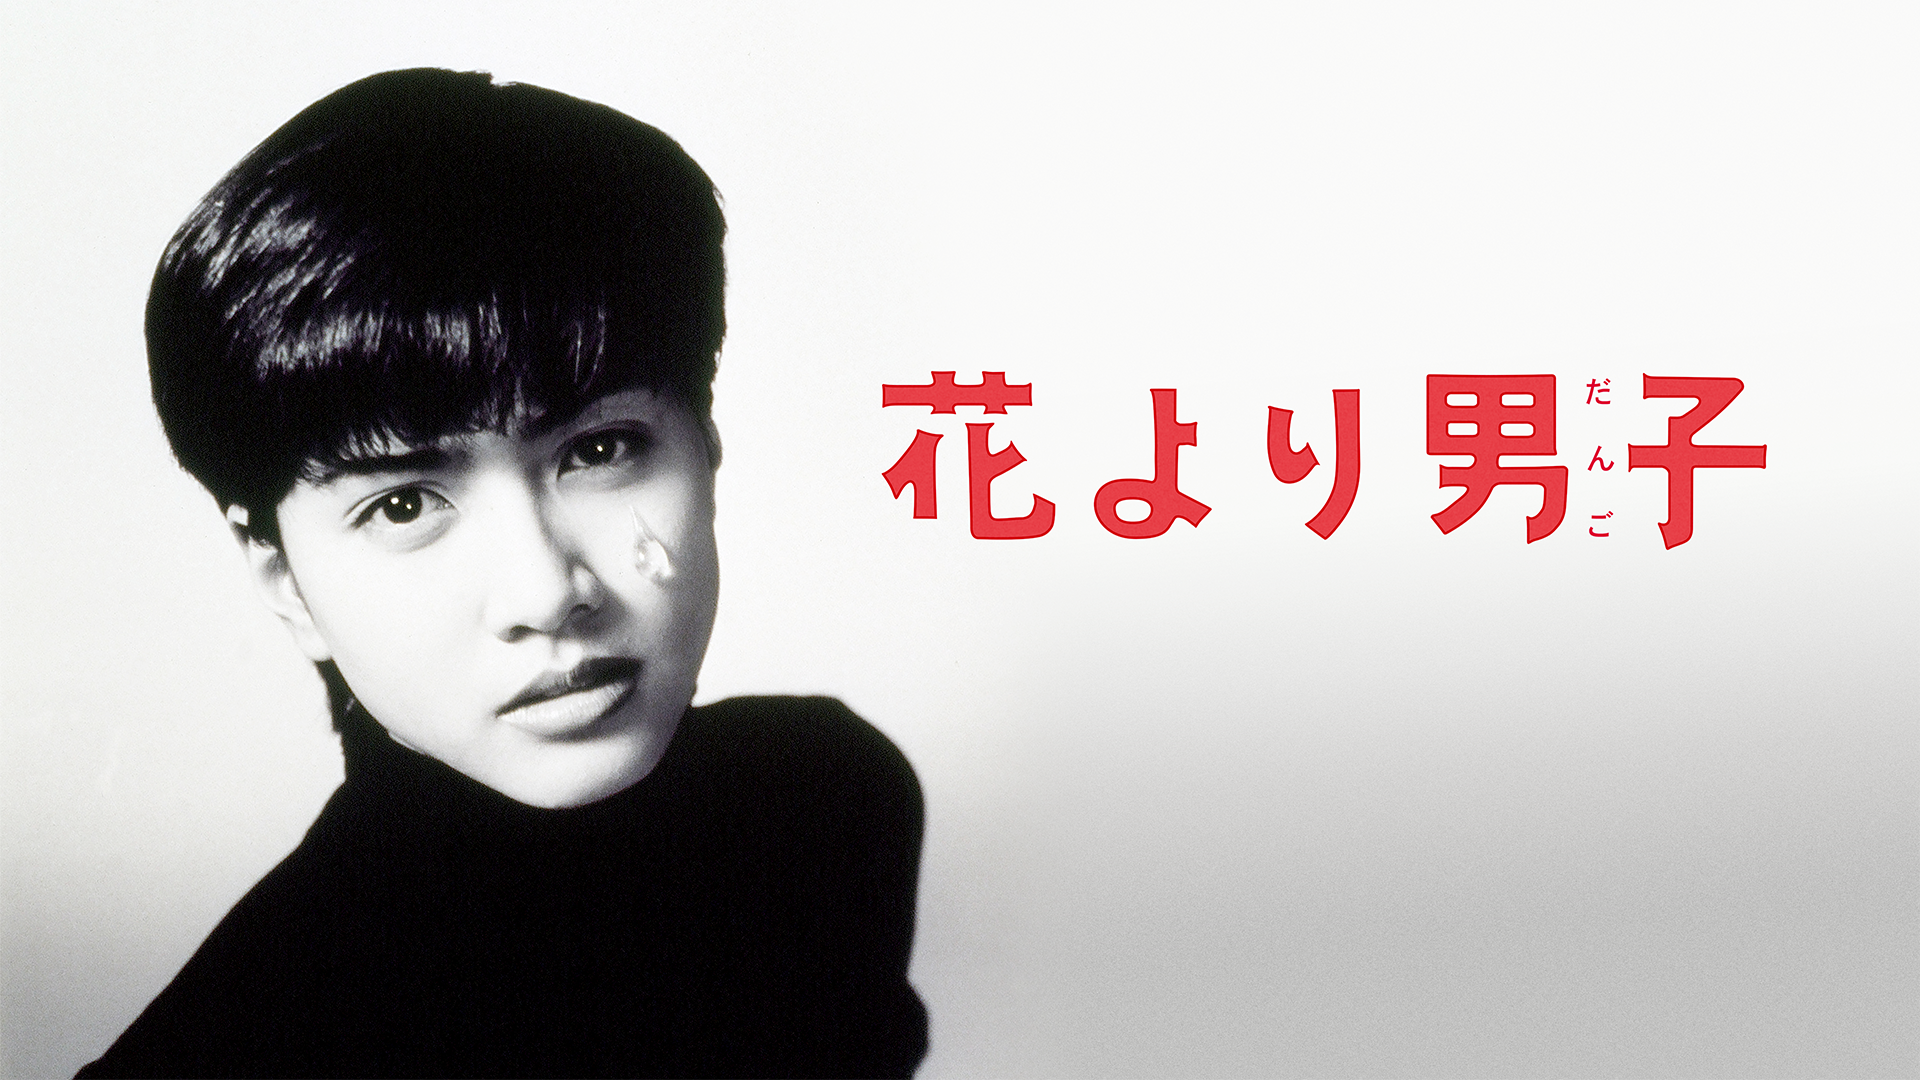 花より男子(邦画 / 1995) - 動画配信 | U-NEXT 31日間無料トライアル